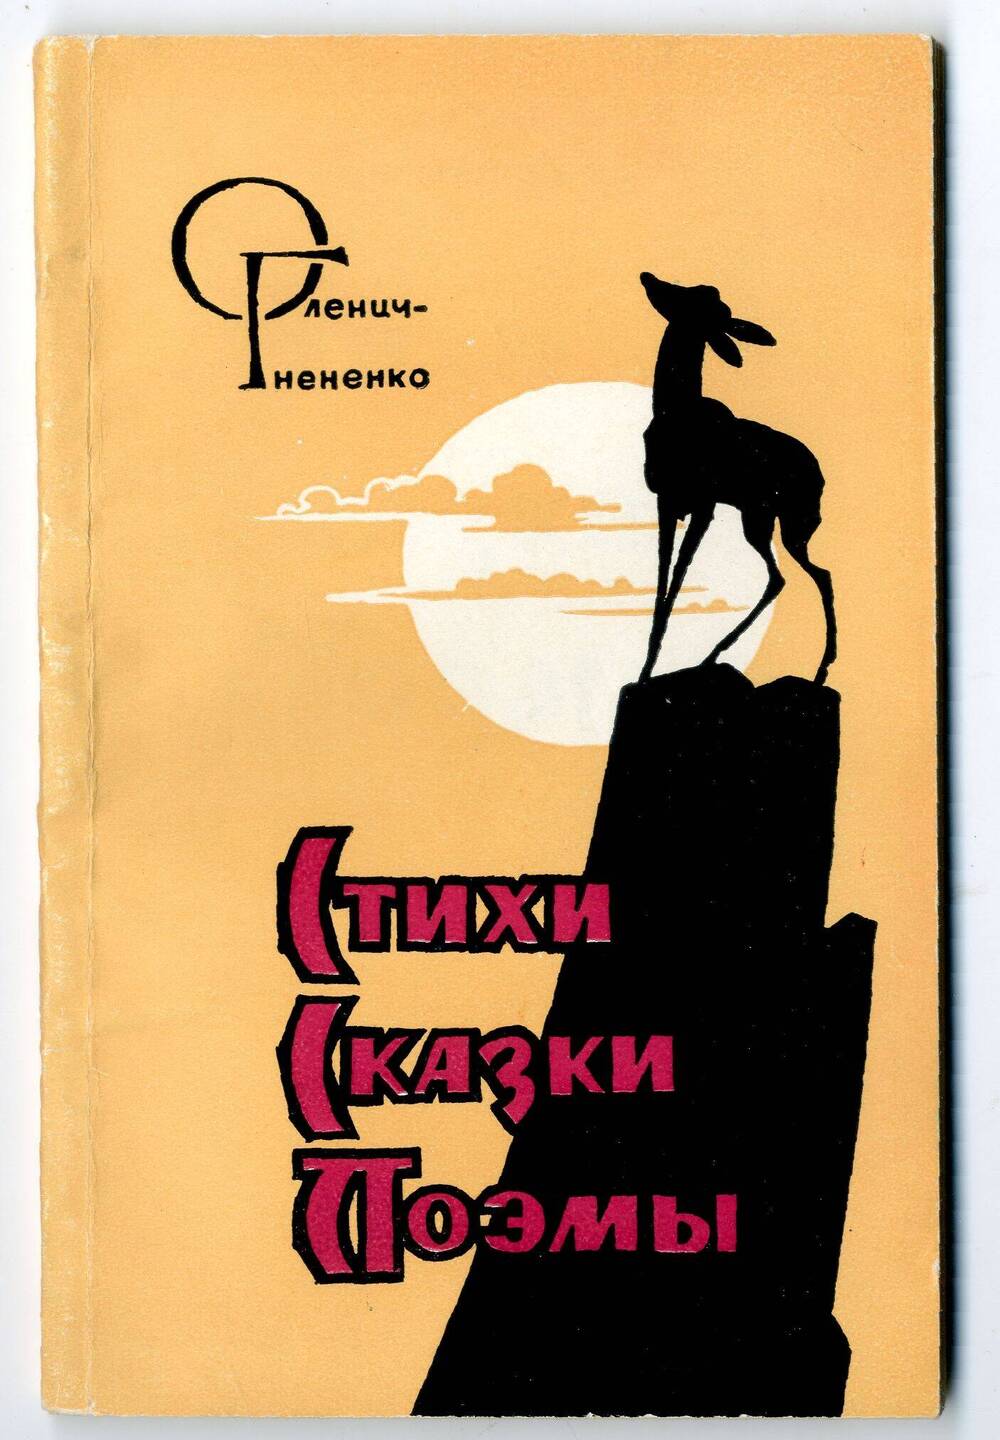 Книга: Оленич-Гнененко А.П. Стихи, сказки, поэмы, Ростов н/Д, 1964.